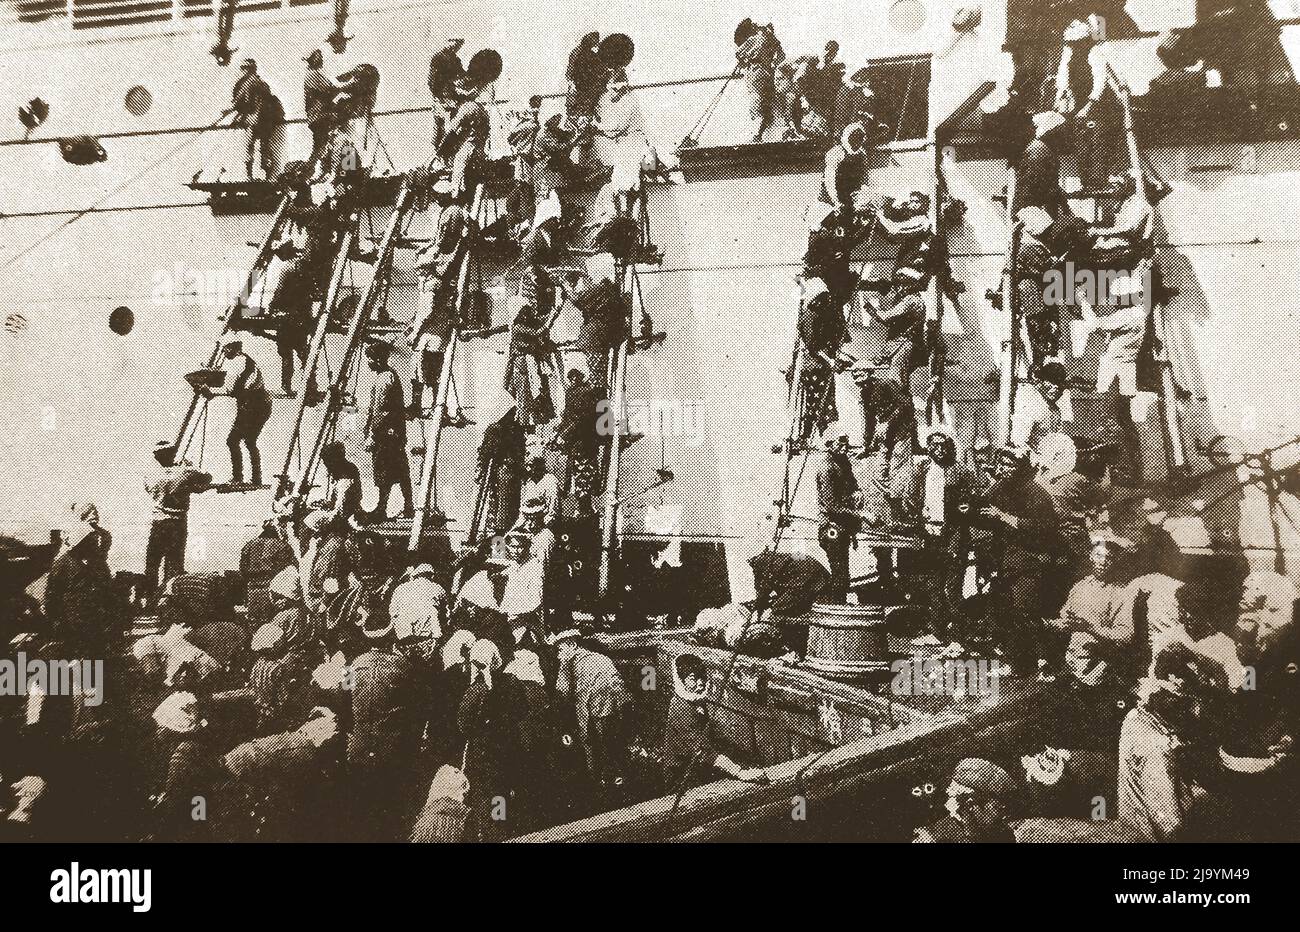 Japan - eine alte Illustration, die Arbeiter zeigt, die als „japanische Kühle“ beschrieben wurden, indem sie Leitern benutzten, um ein großes Schiff mit Kohle von Hand mit Körben in Yokohama zu befeuern, um 1930s ------ 日本 - 1930年代頃、横浜でバスケットを使って石炭を手作業で石炭で燃やすためにはしごを使った「日本のクーリー」と表現された労働者を示す古いイラスト Stockfoto